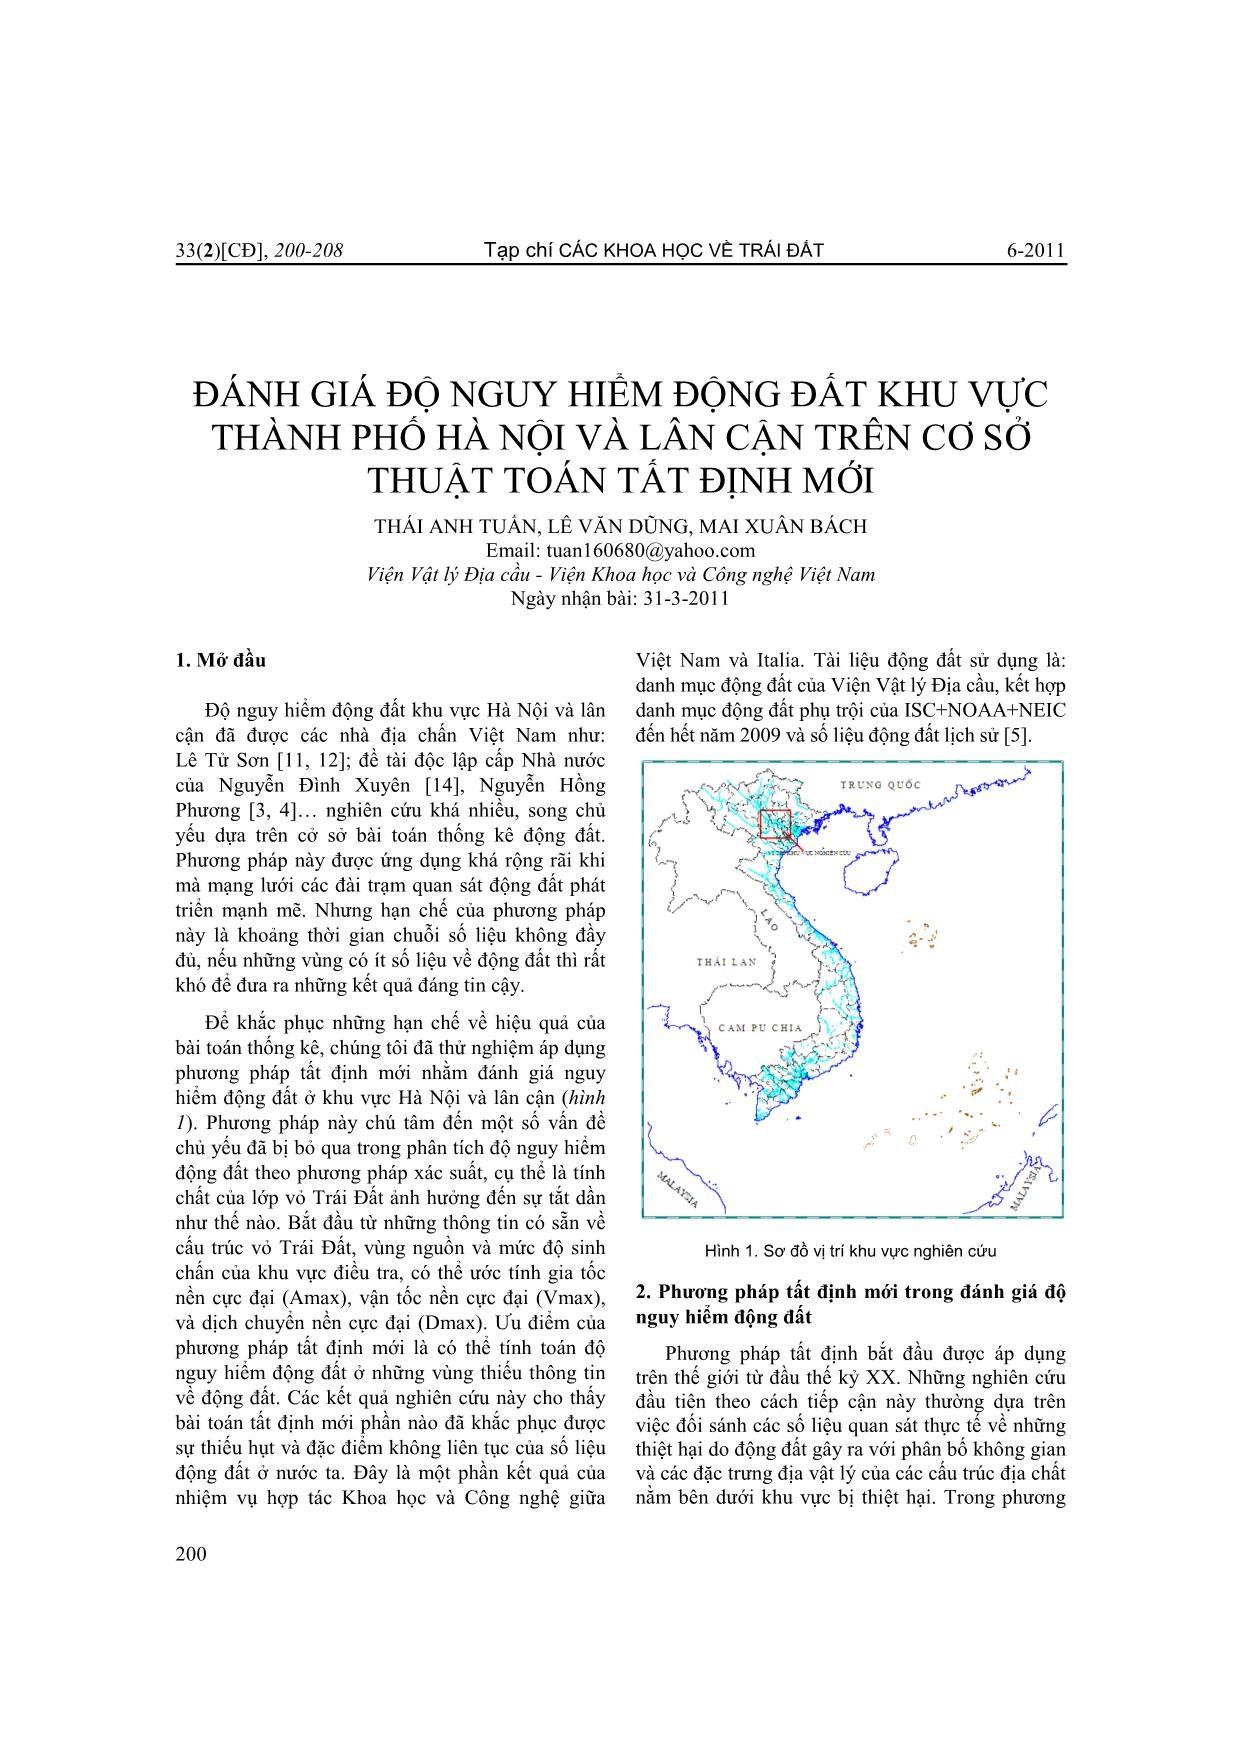 Đánh giá độ nguy hiểm động đất khu vực thành phố Hà Nội và lân cận trên cơ sở thuật toán tất định mới trang 1